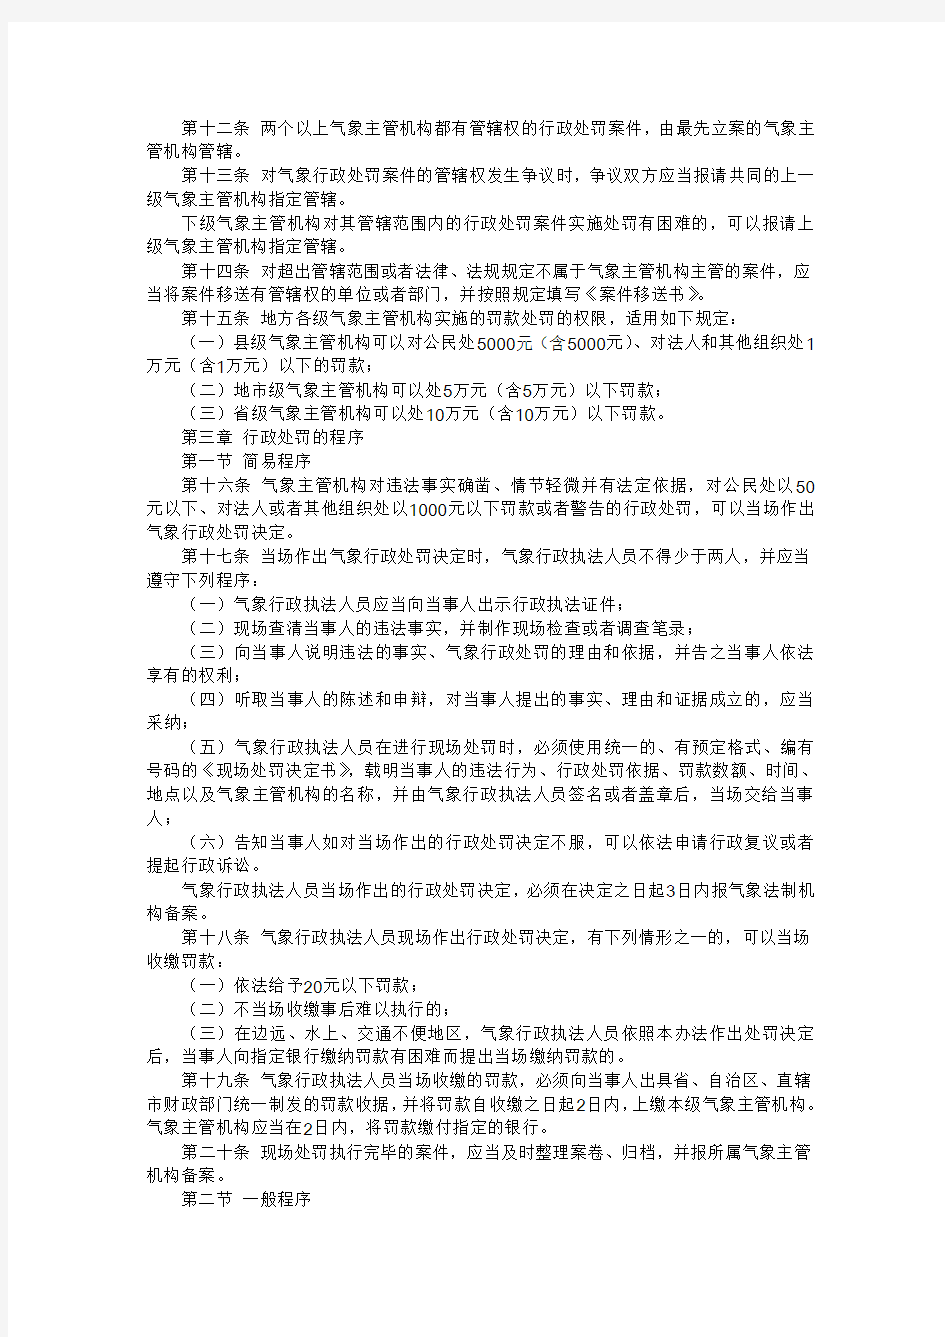 中国气象局第1号令《气象行政处罚办法》